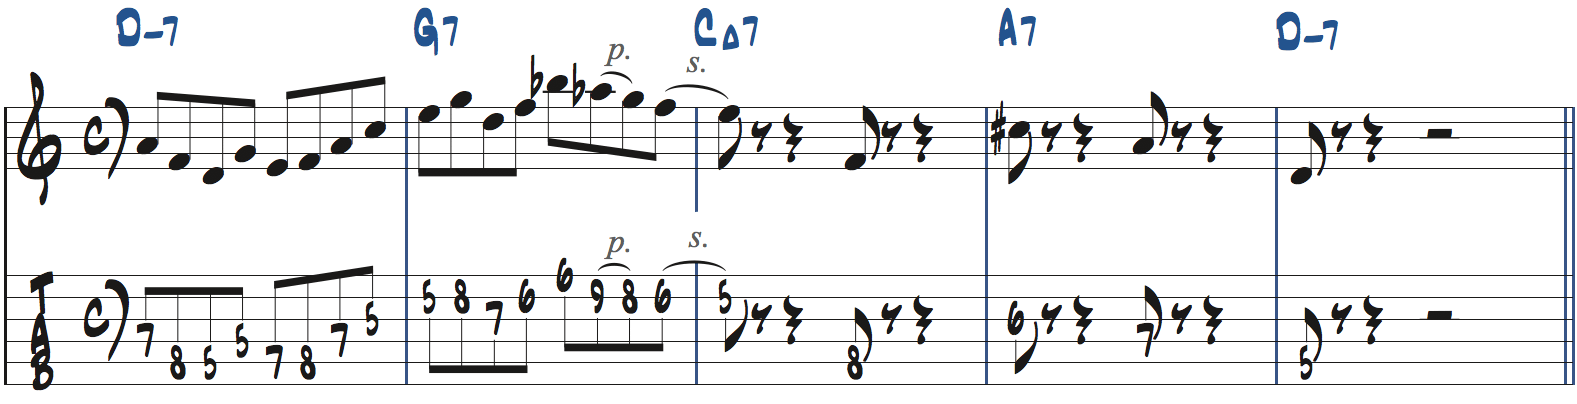 251リックを使った後のフレーズの作り方7楽譜